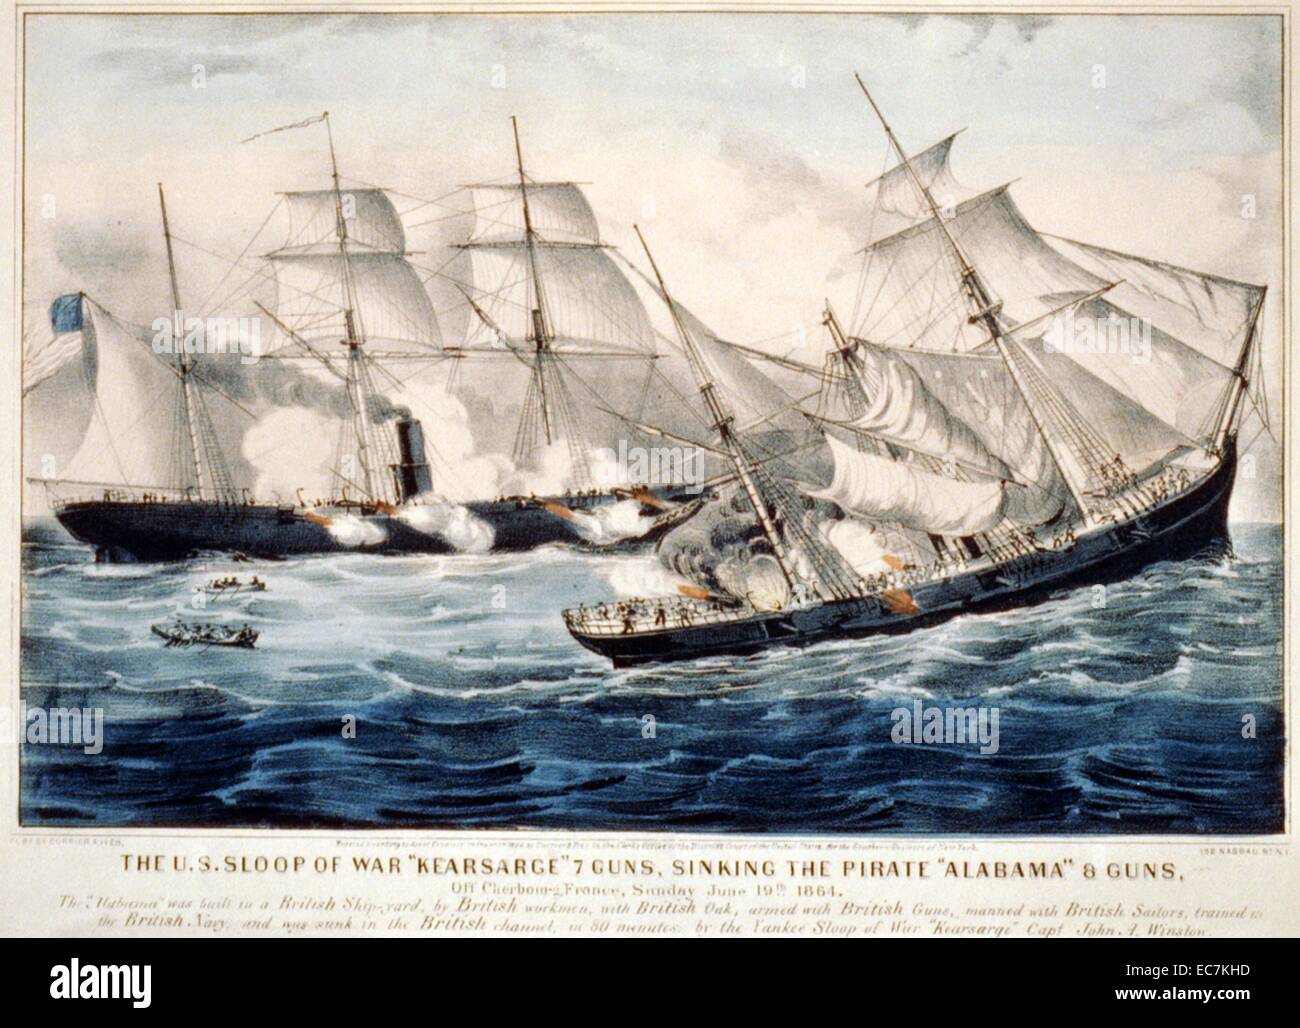 Los EE.UU. sloop de guerra "Kearsarge' 7 pistolas, hundiendo el pirata 'Alabama' 8 guns off Cherbourg, Francia el 19 de junio de 1864. El USS Kearsarge es mejor conocido por la derrota de los Confederados commerce raider CSS Alabama durante la Guerra Civil Americana. Foto de stock